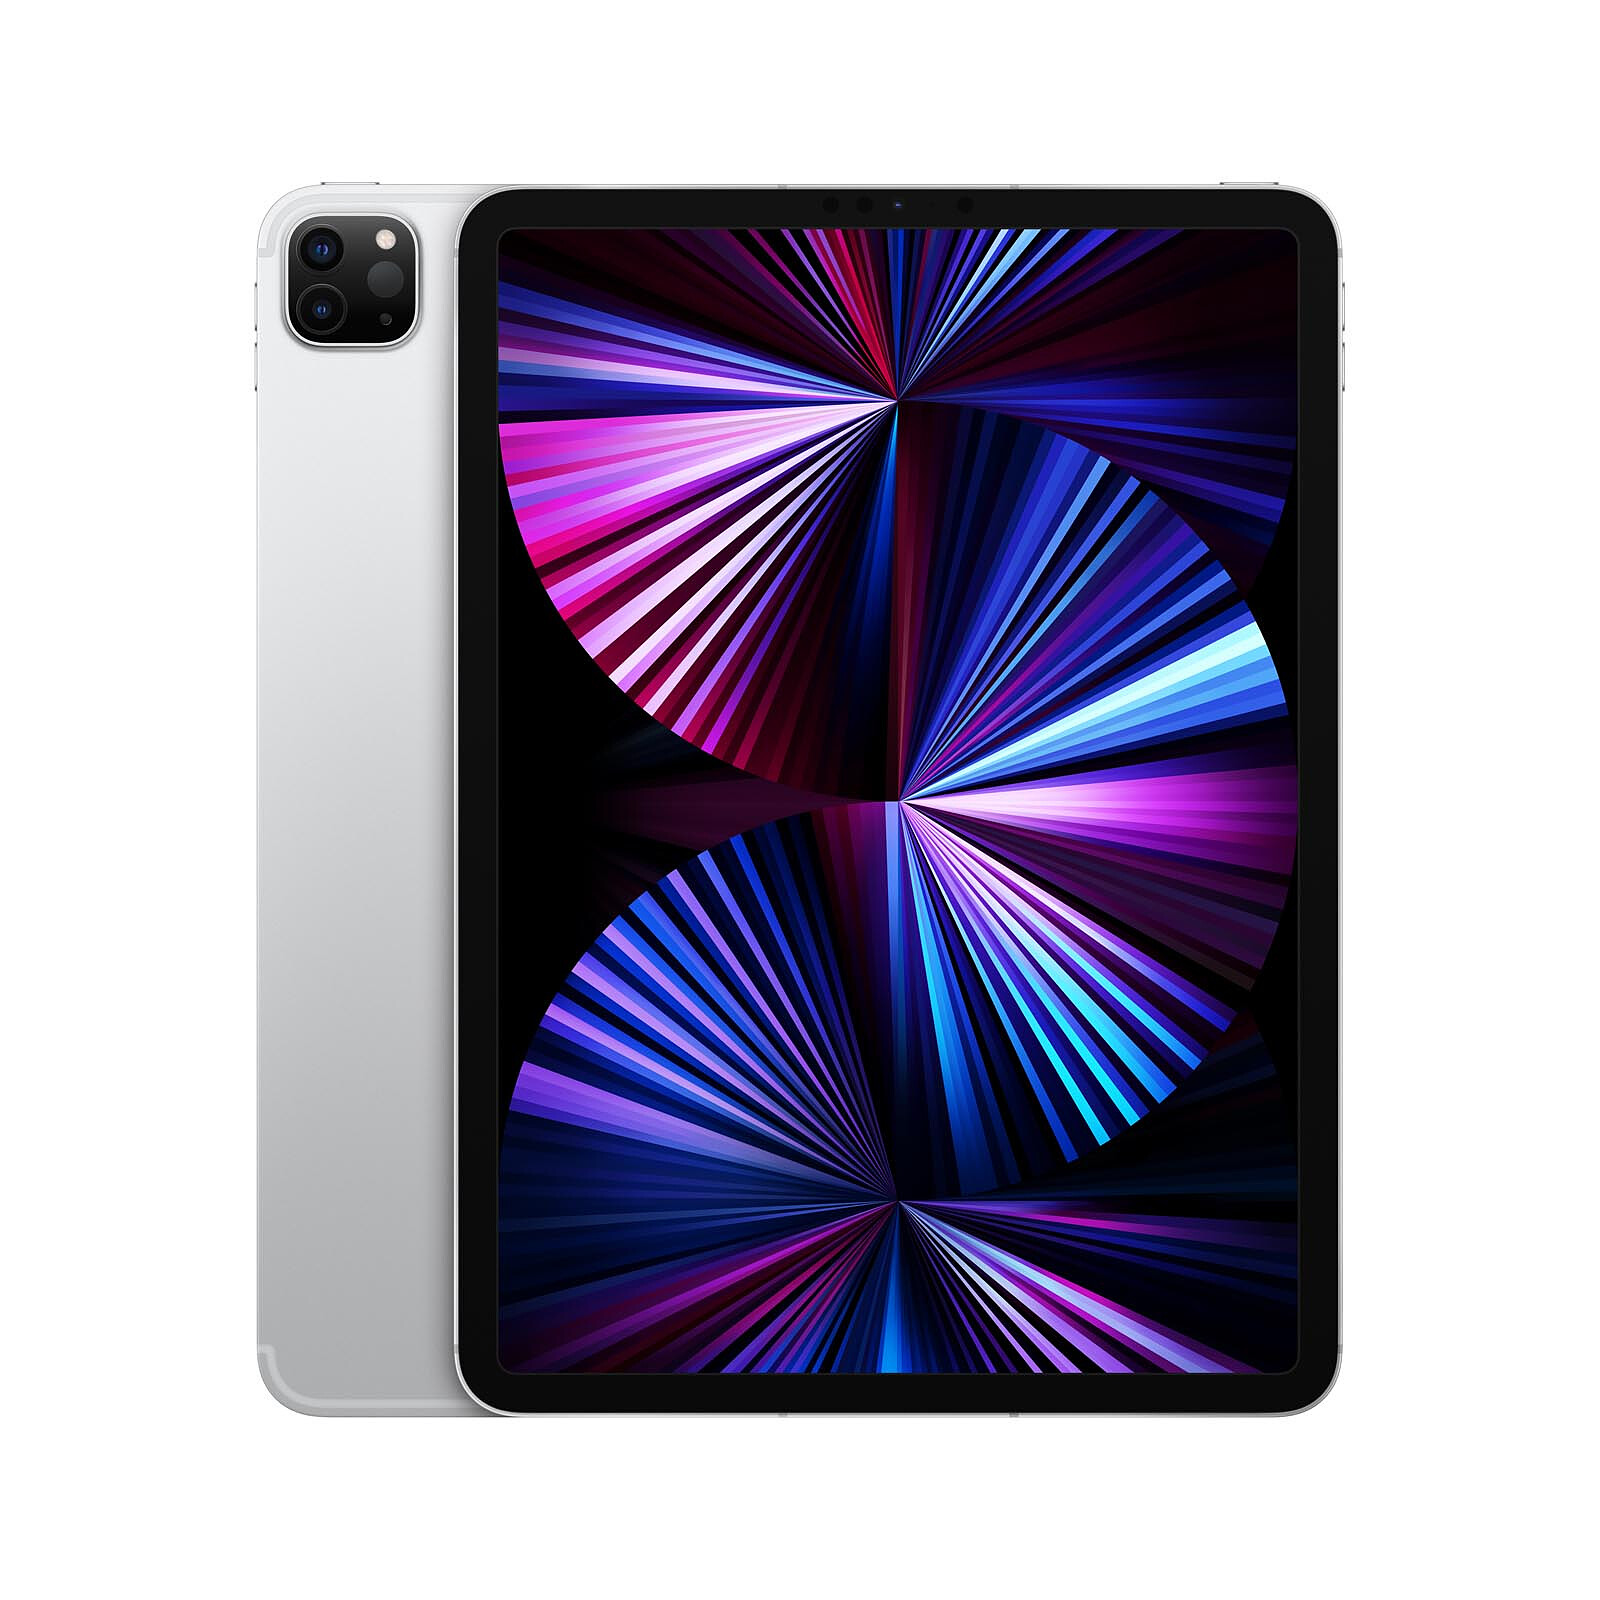 iPad Pro 12,9' (3e génération) - Argent - 256Go - Wifi